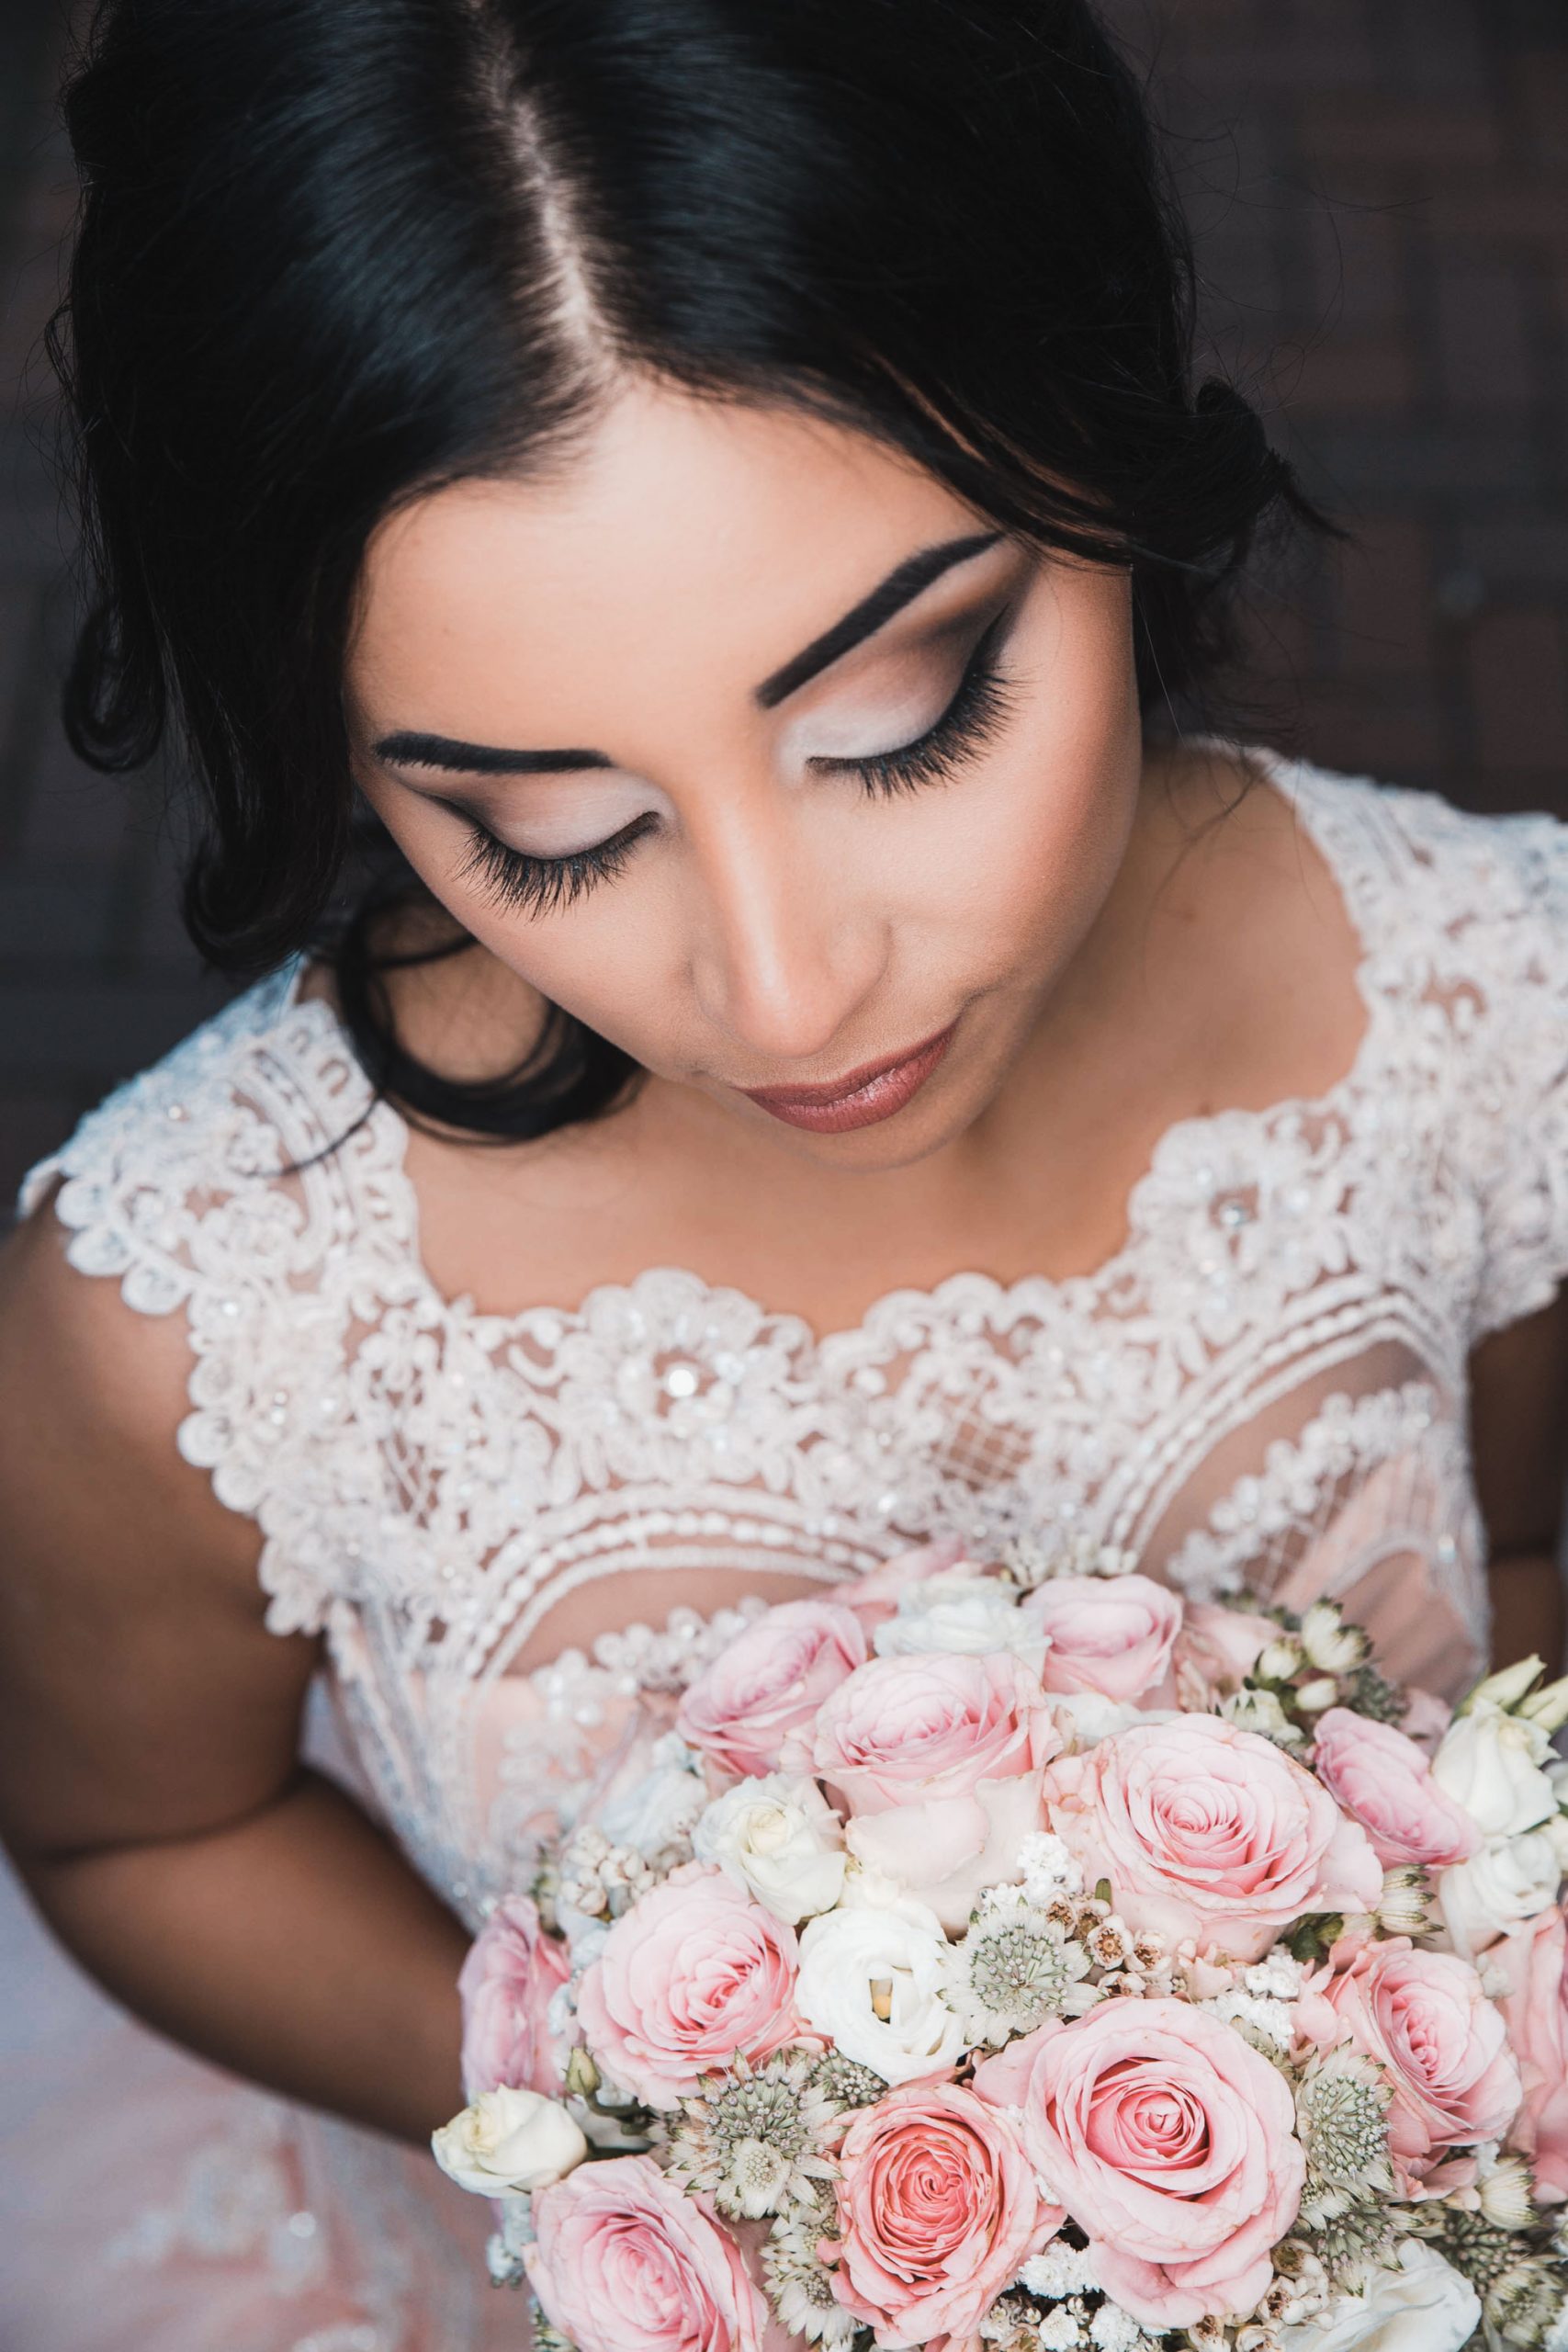 Hochzeitsbild einer schönen Braut mit perfektem Braut Styling und Brautfrisur. Hochzeitsfoto aus erhöhter Perspektive. Braut schaut verträumt auf ihren Brautstrauß.